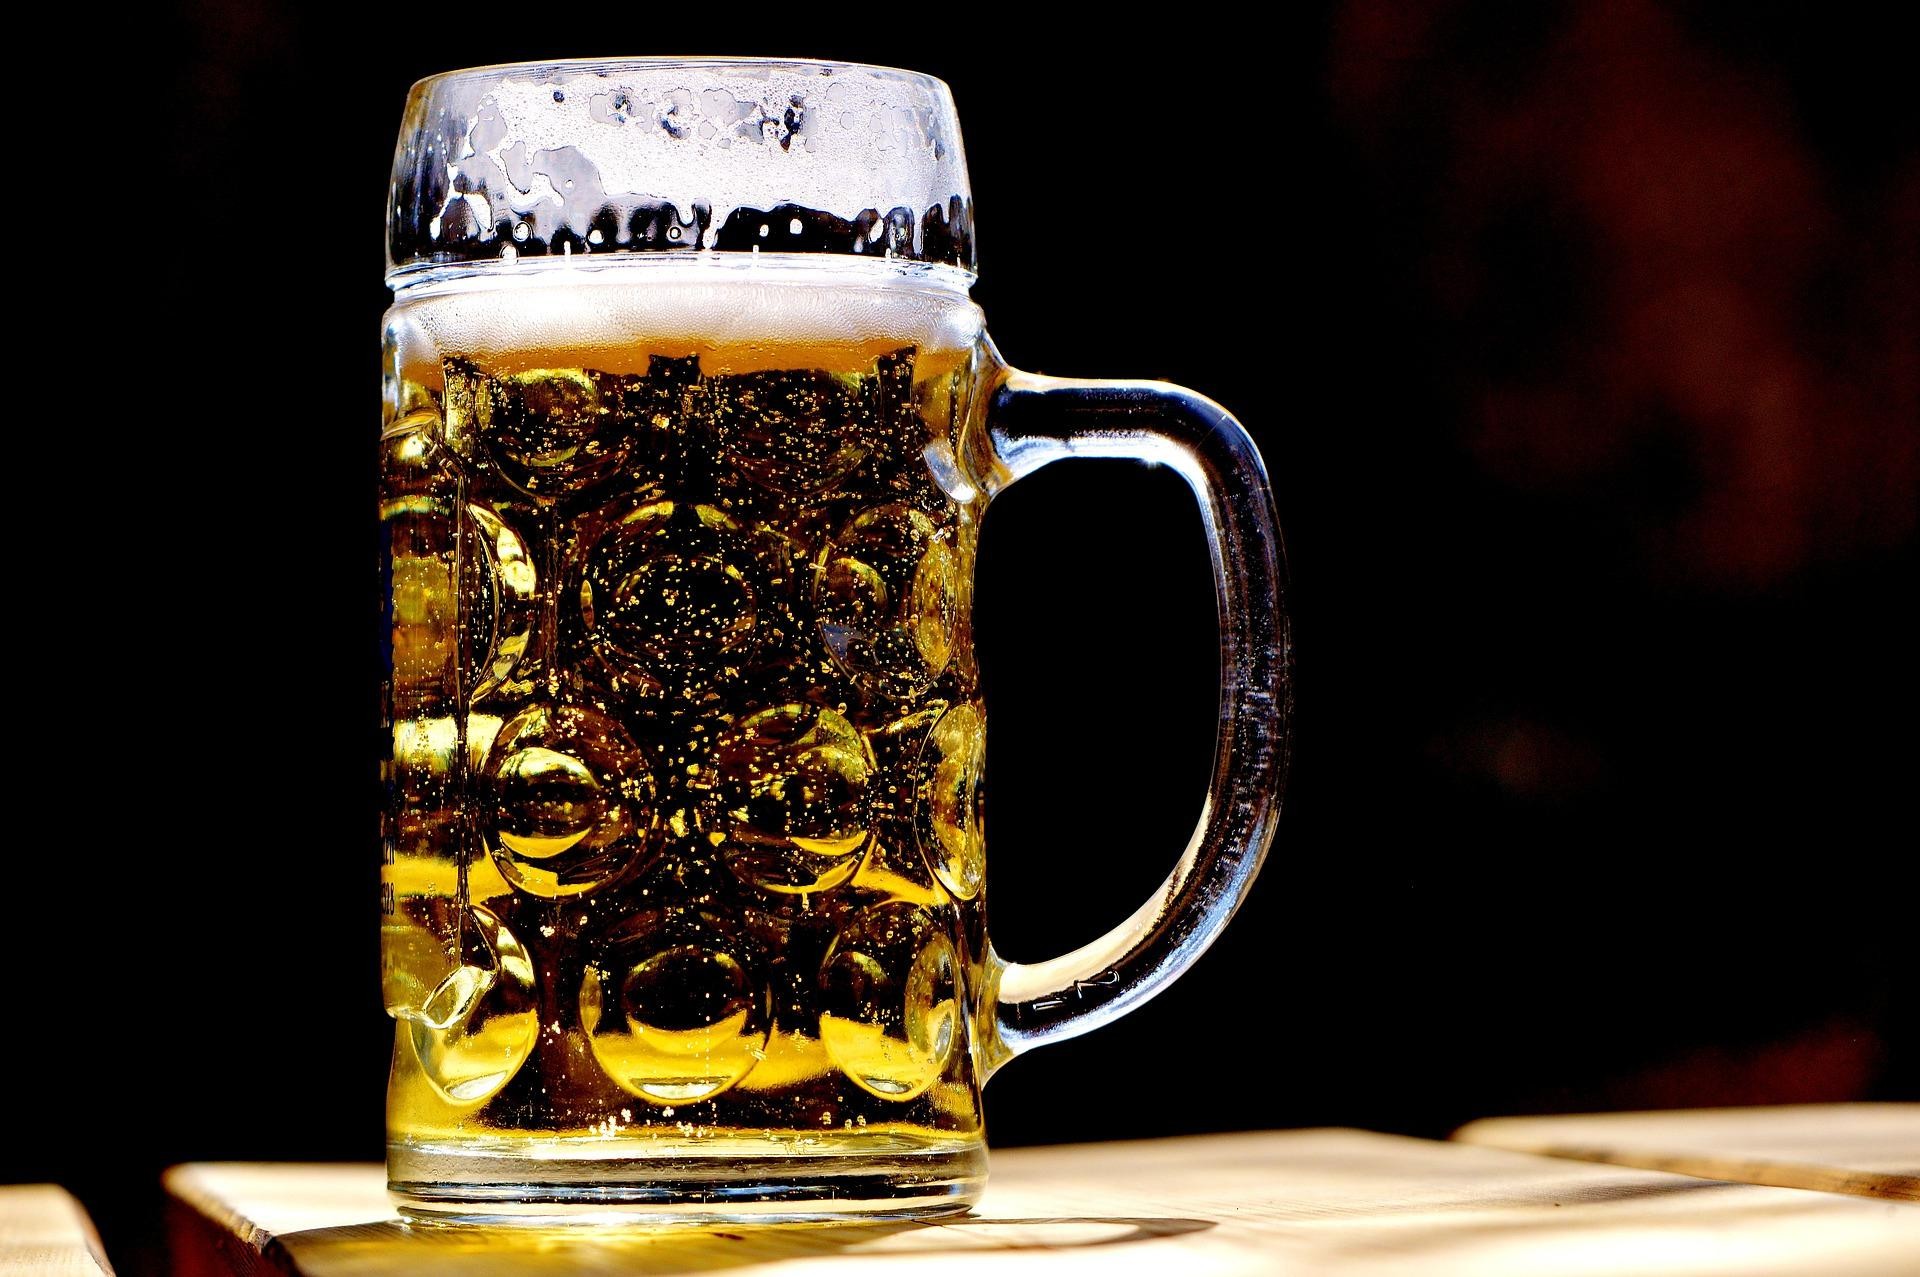 Cor, amargor, teor alcoólico: O que diferencia cada uma das cervejas?